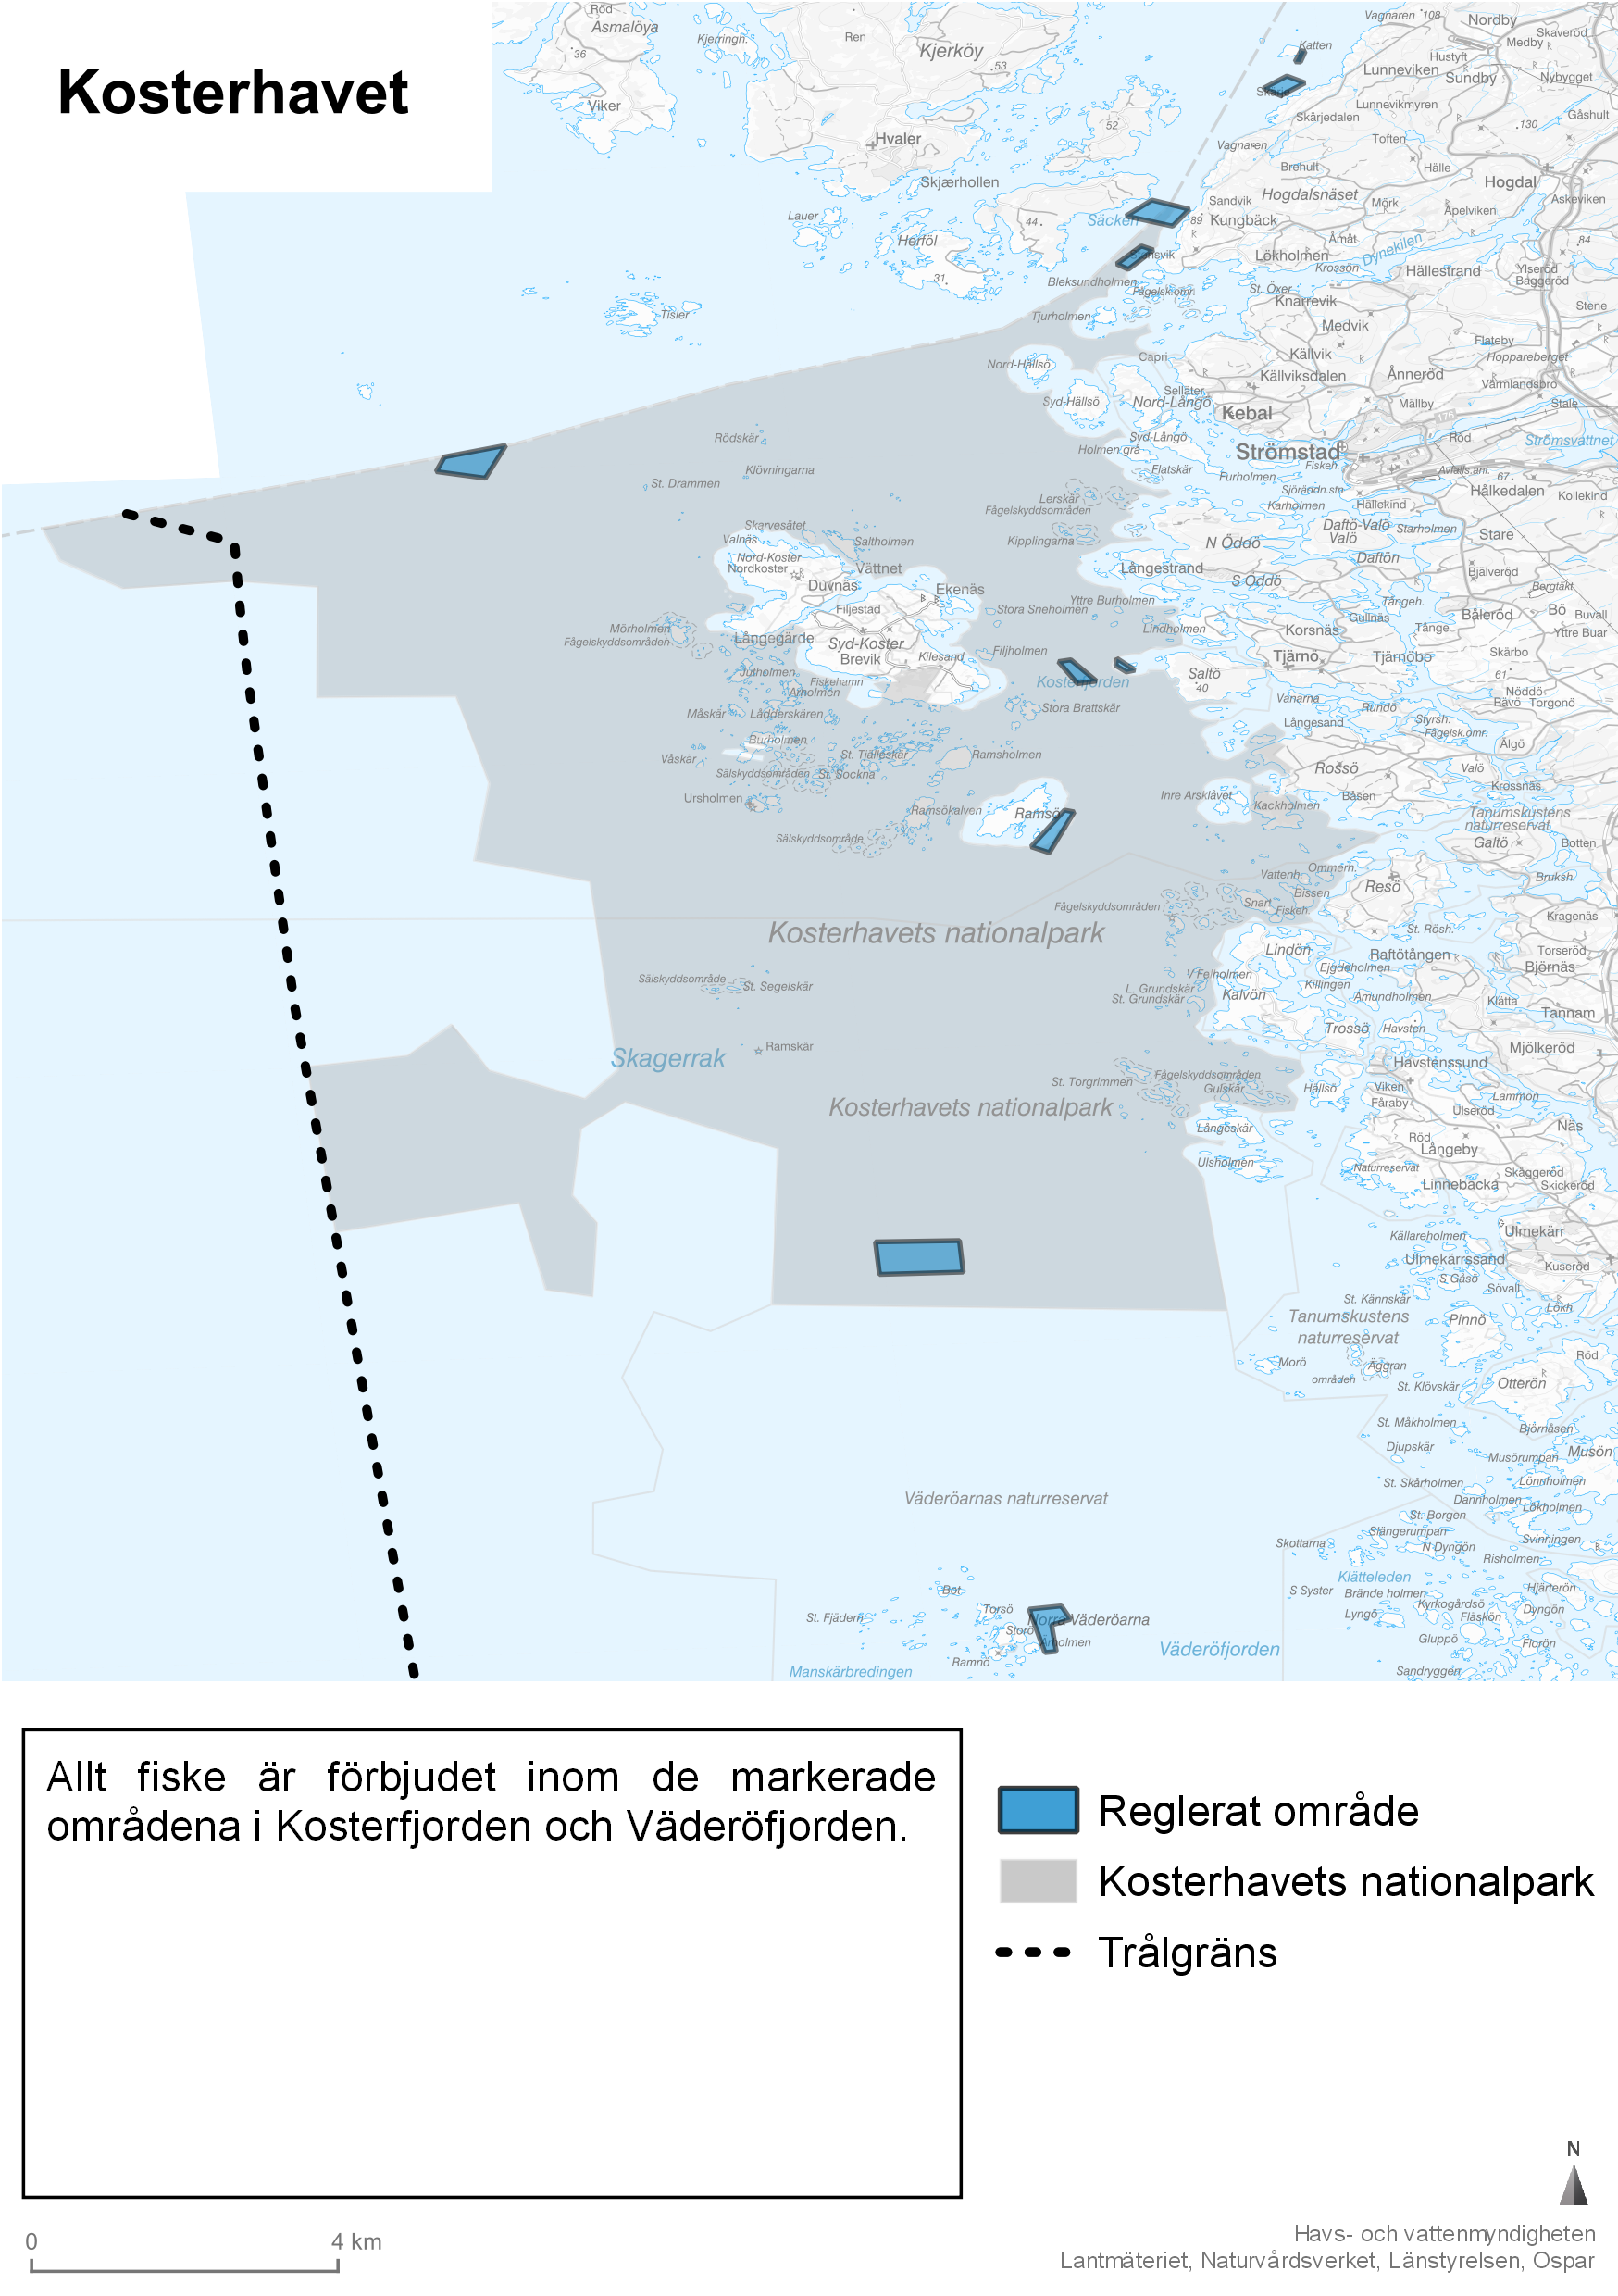 Kosterhavets nationalpark markerad med grå nyans. Reglerade områden markerade med blå färg. Streckad linje visar trålgräns.